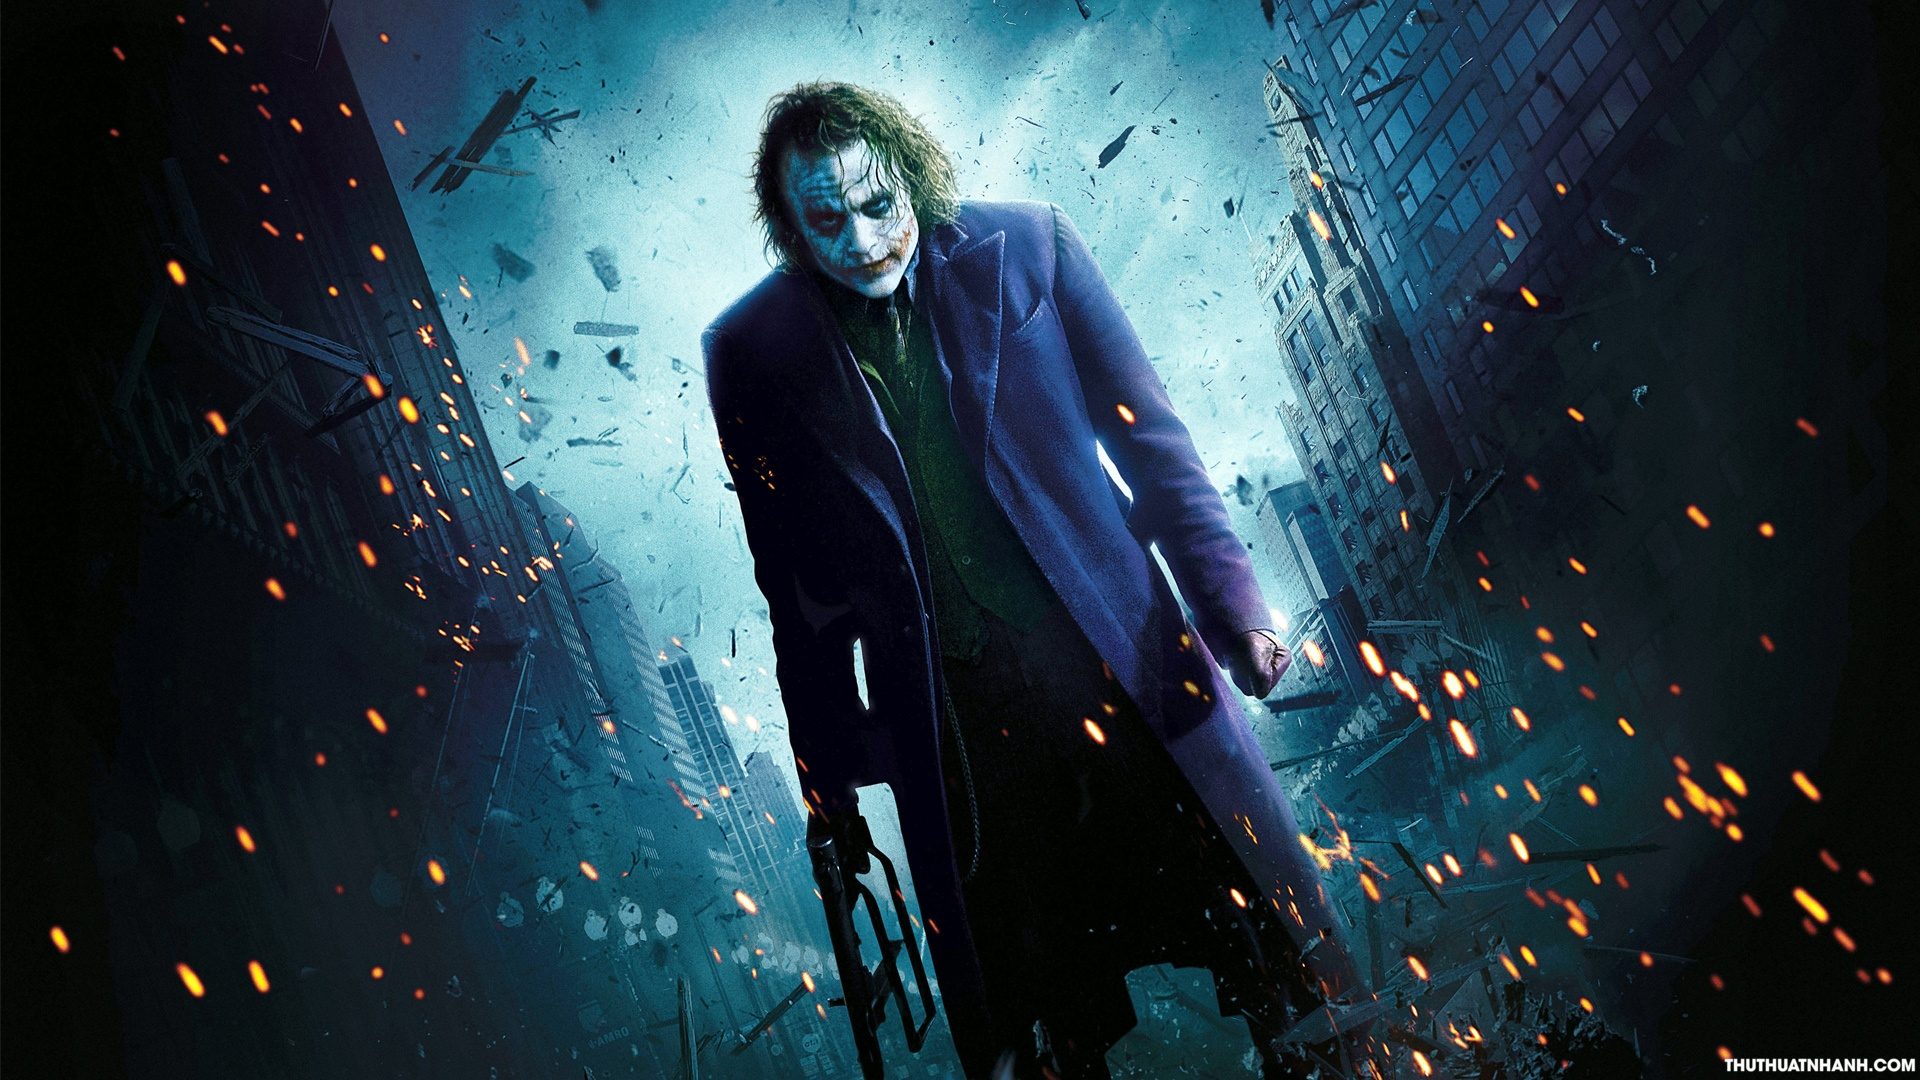 Joker 4K Ultra HD Wallpapers  Top Những Hình Ảnh Đẹp